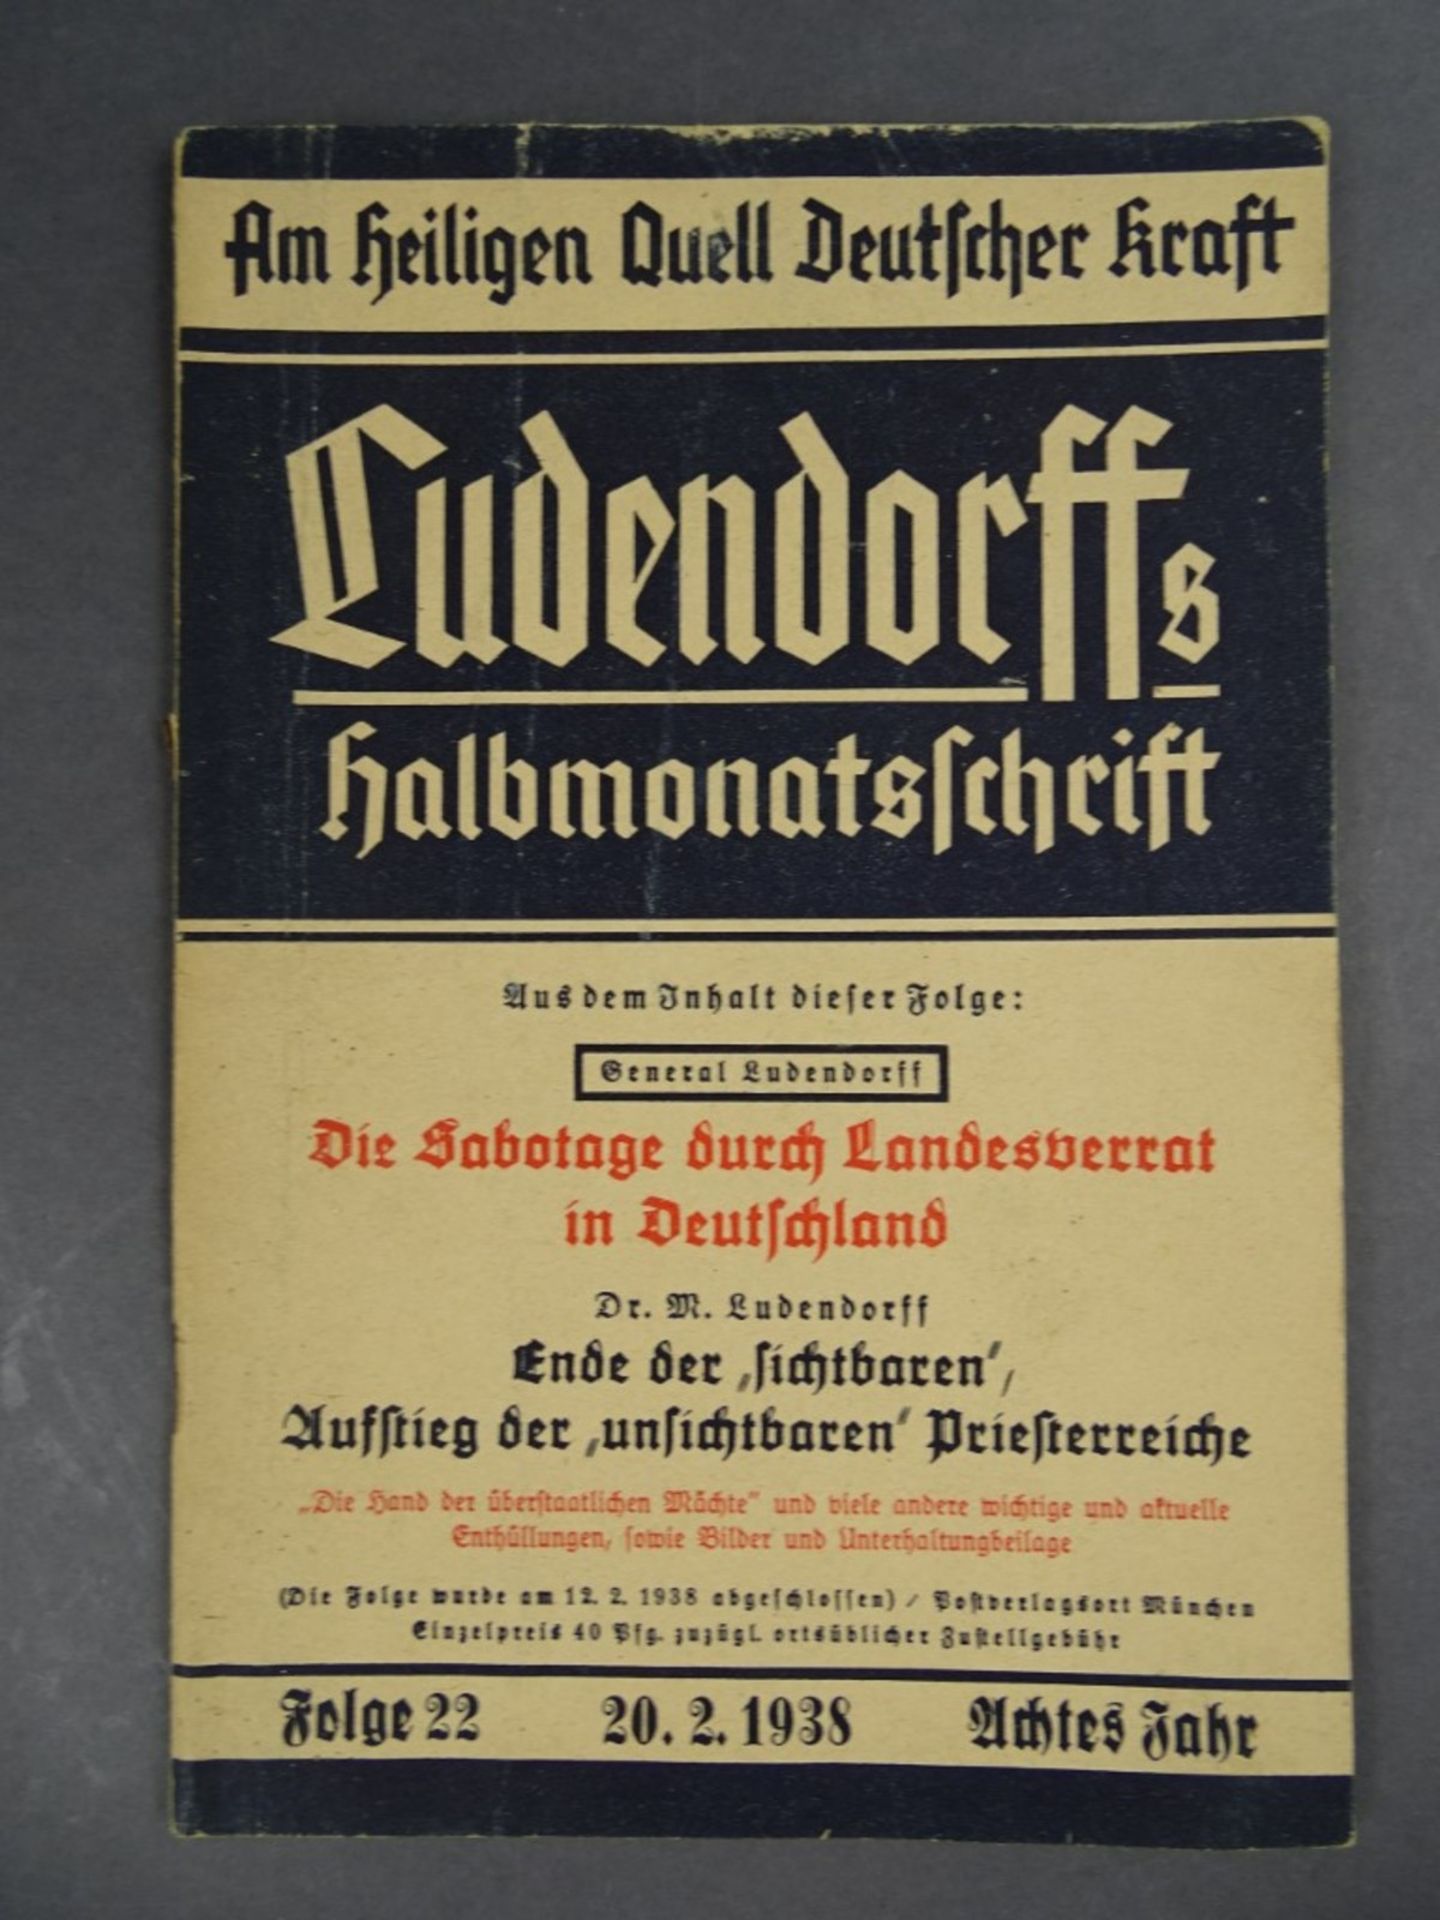 Ludendorffs Halbmonatsschrift, Folge 22, 1938, Achtes Jahr, gut erhalten